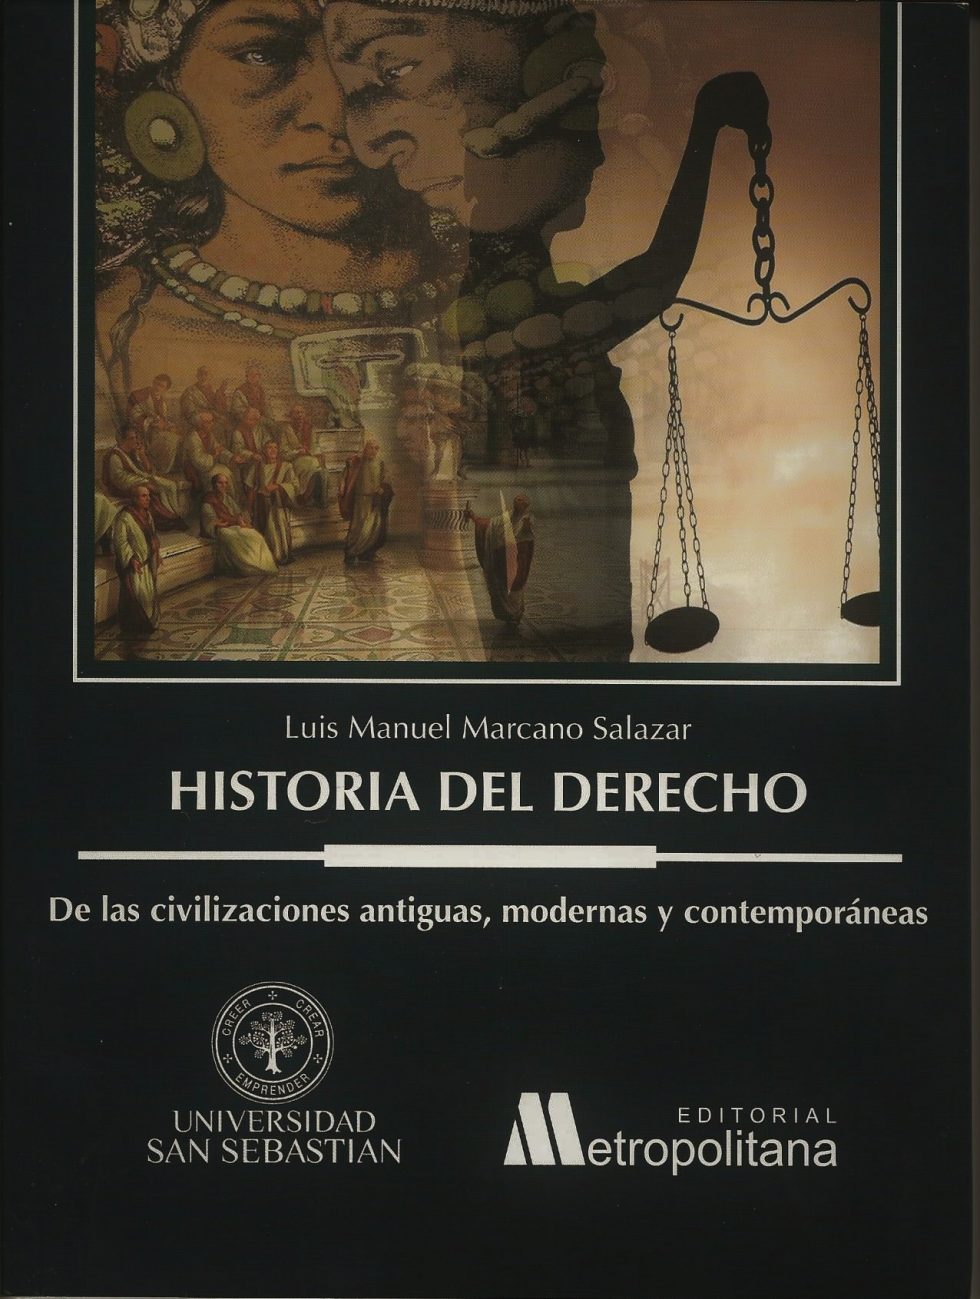 Historia del Derecho. De las civilizaciones antiguas, modernas y contemporáneas.